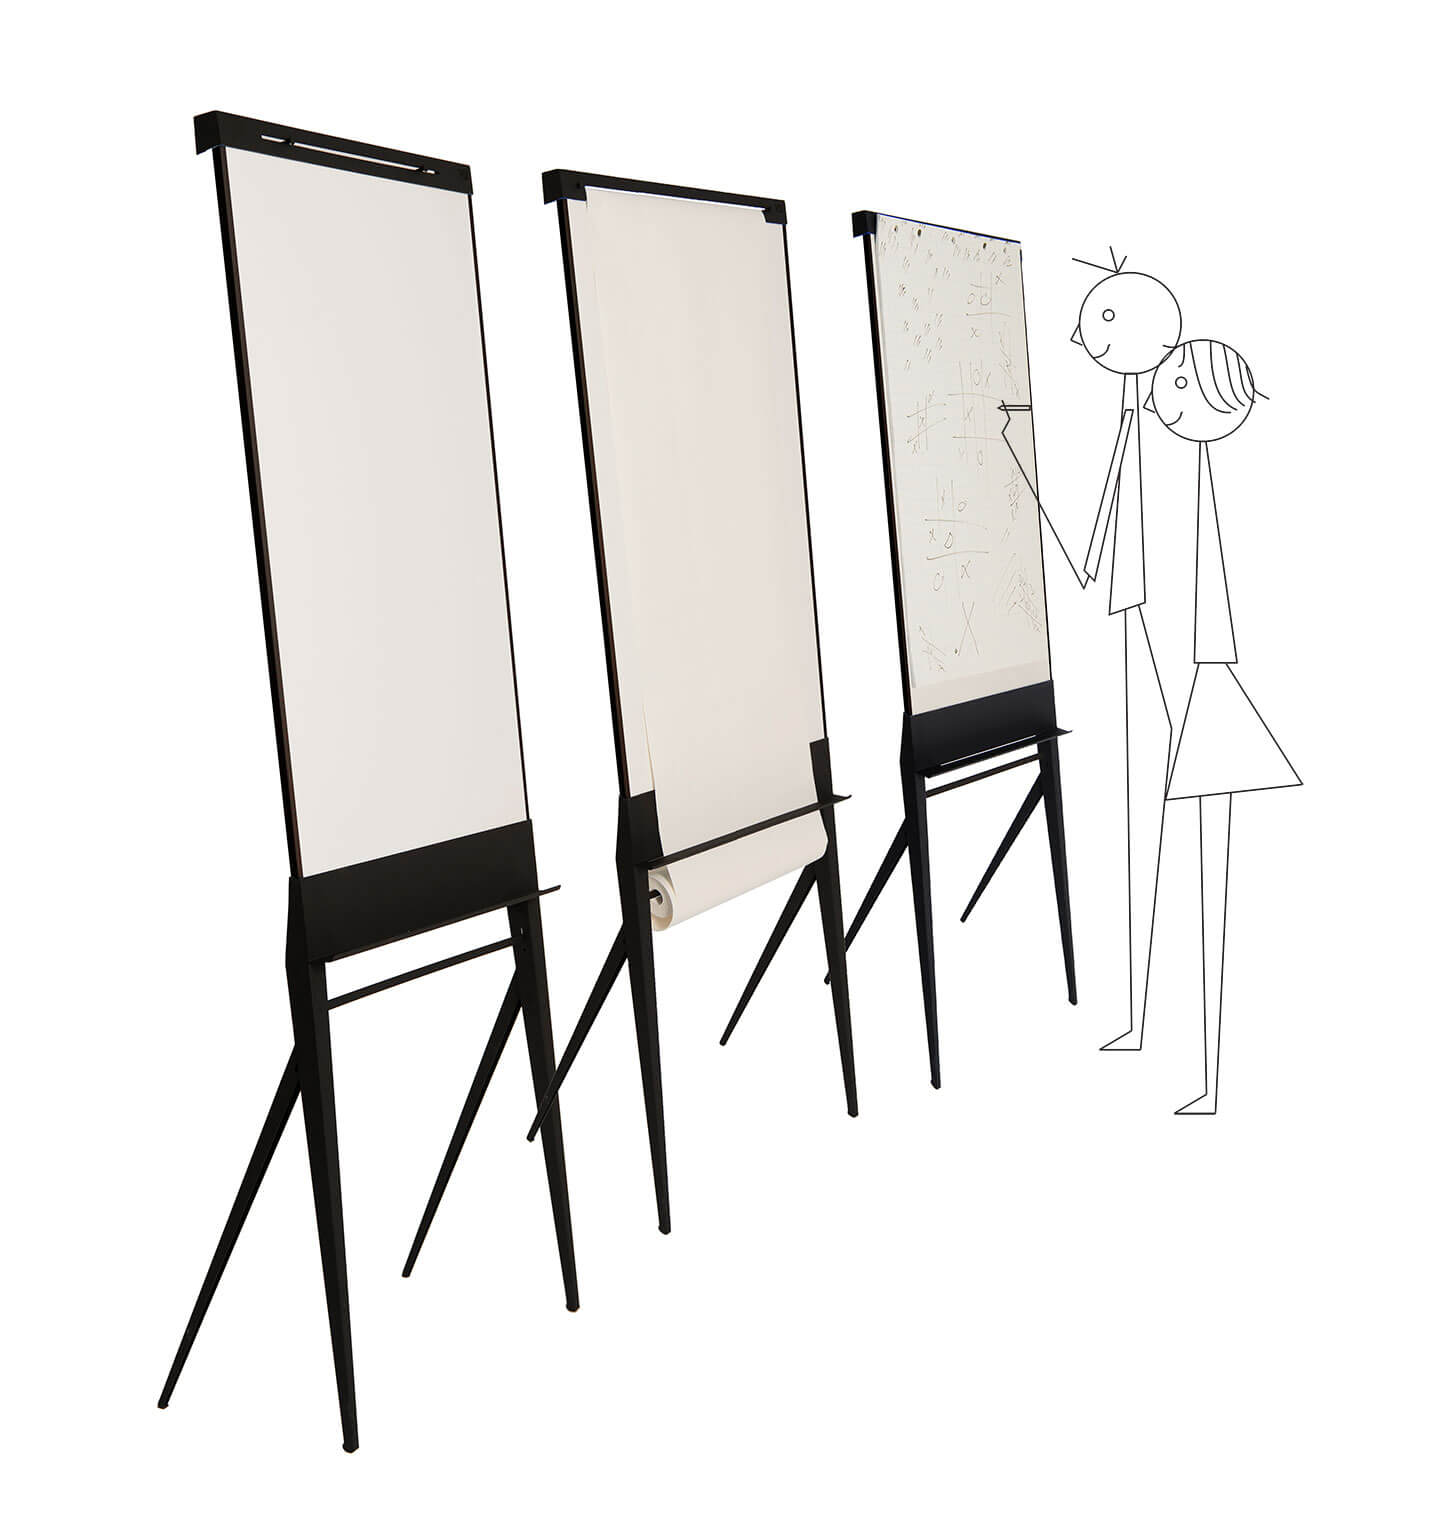 Vaderlijk Gemaakt van Matig Stylefull and smart flipcharts, whiteboards to inspire interactions